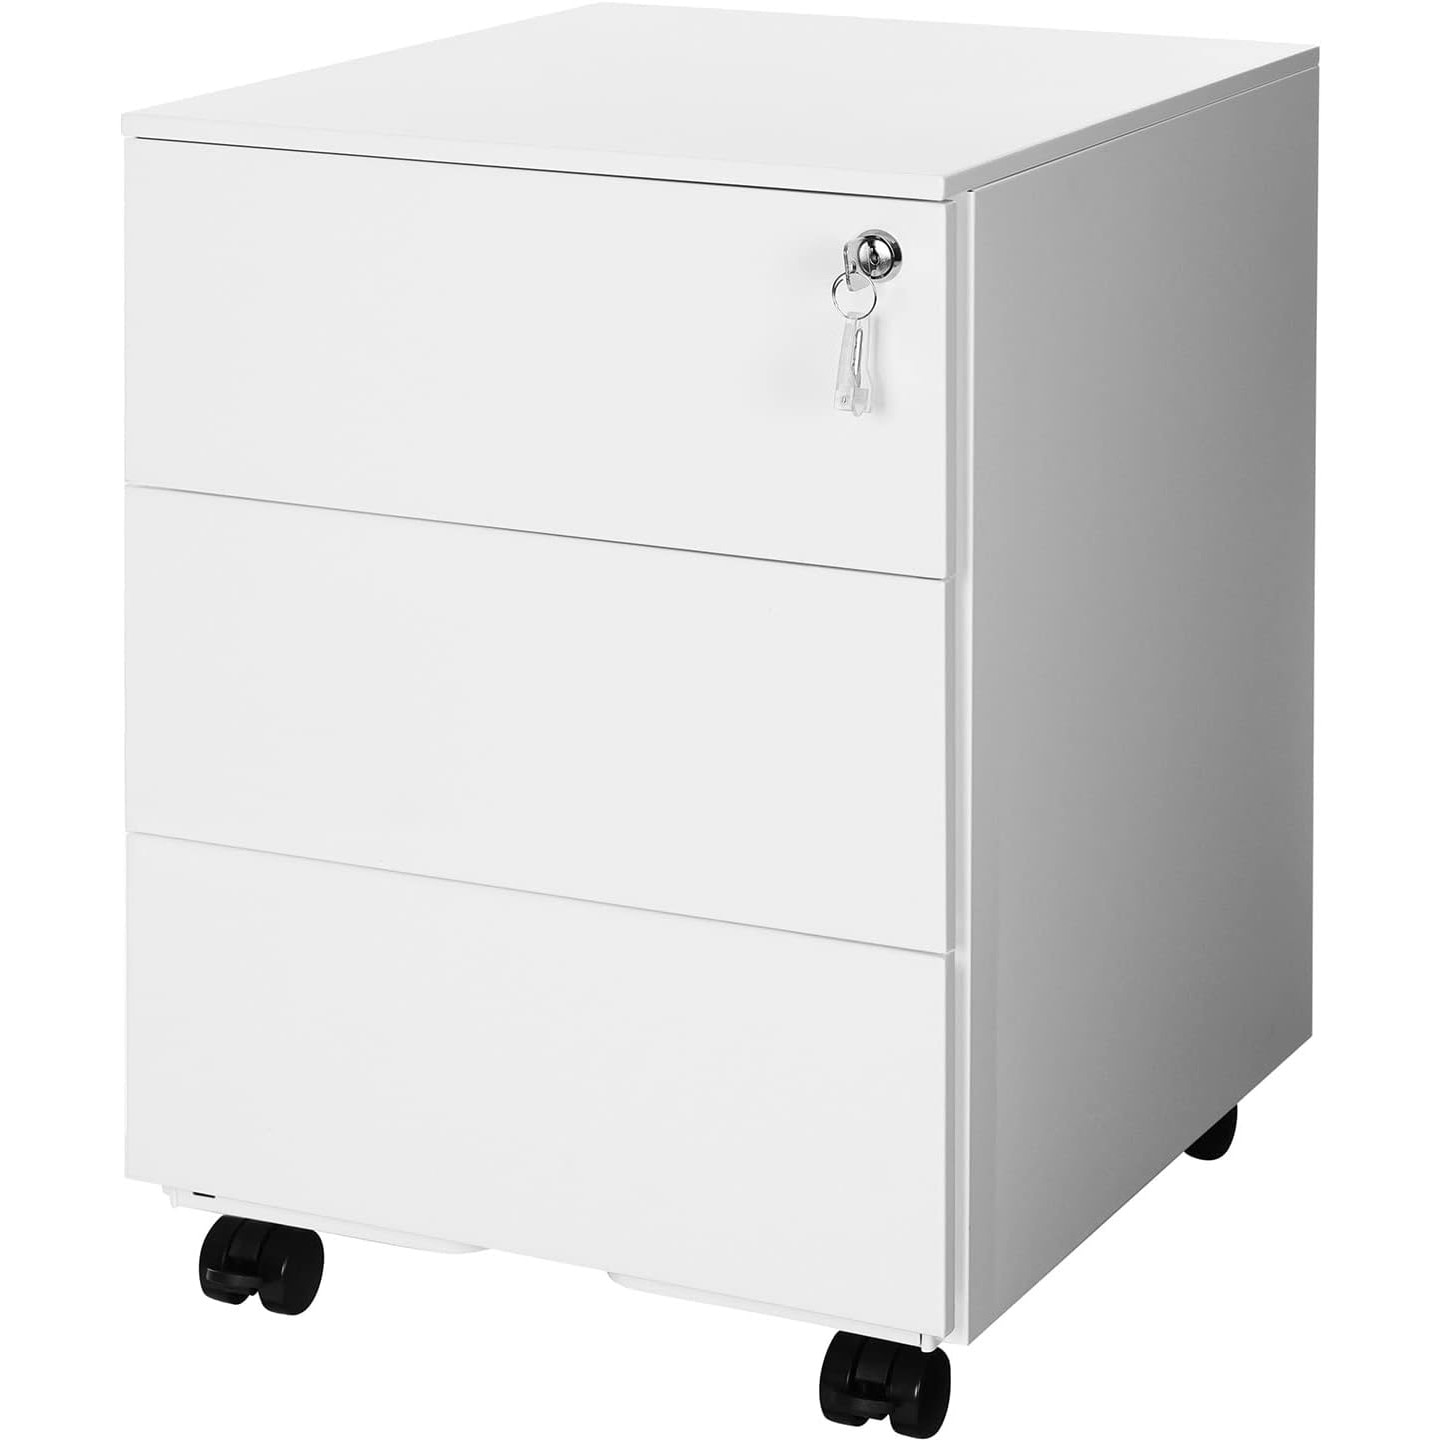 Rollbox metalic pentru birou, cu 3 sertare cu incuietoare, suport dedicat  pentru agrafe si capse, metal, 45 x 39 x 55 cm, alb